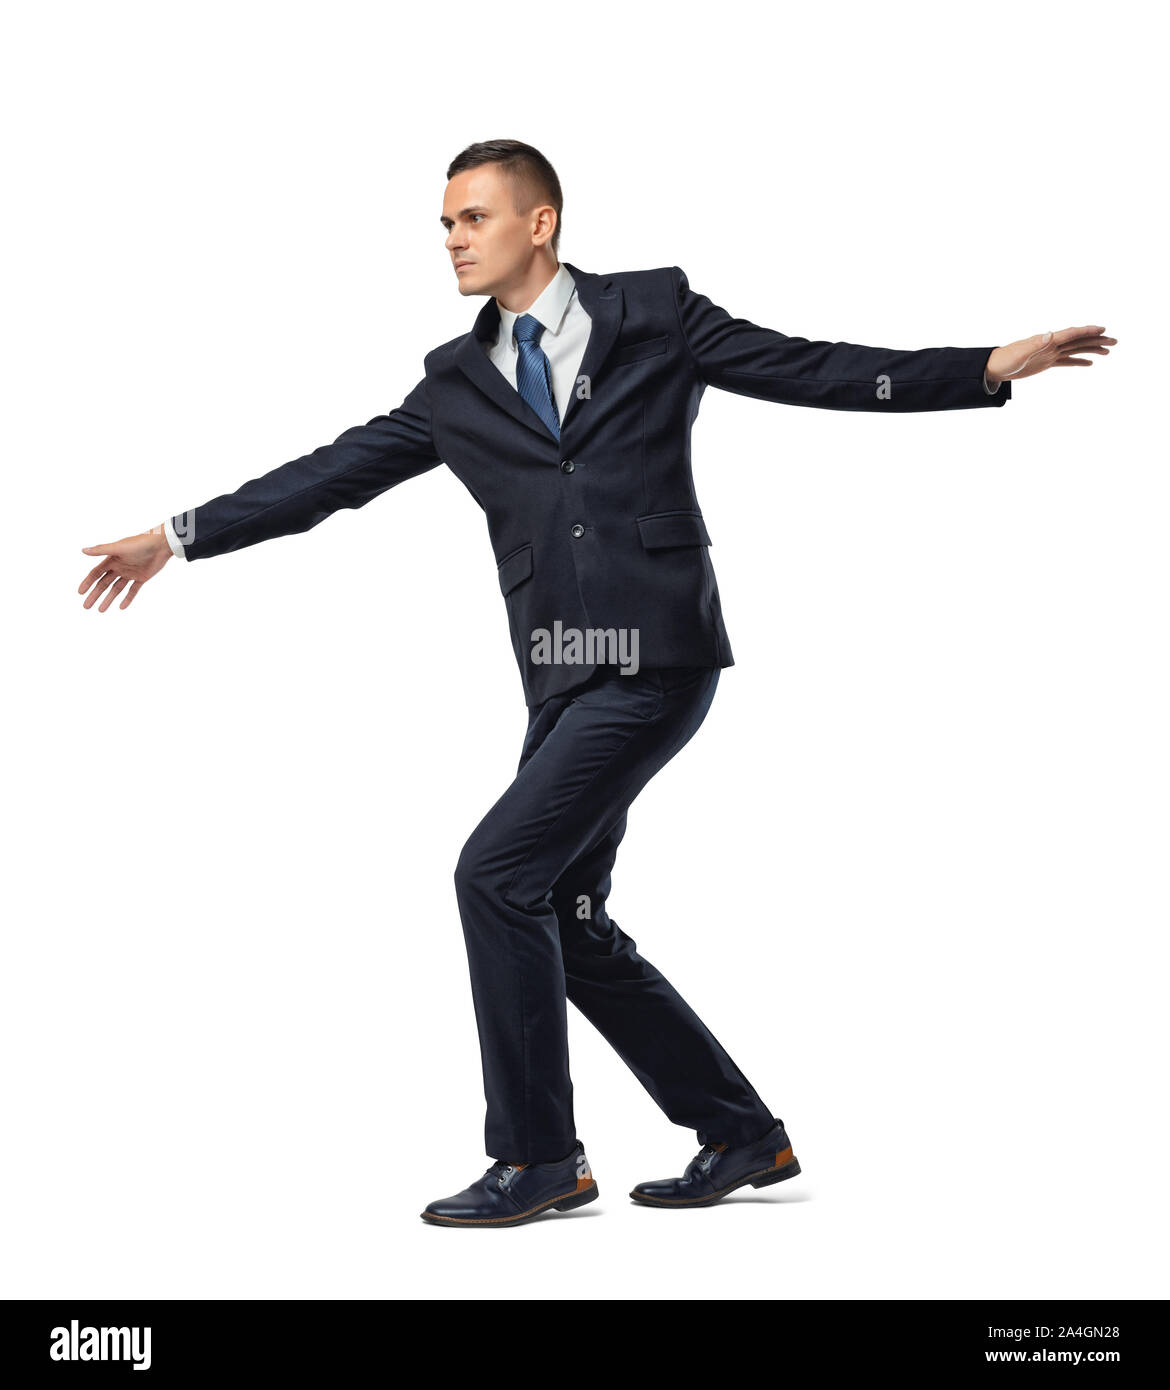 Voll Geschäftsmann walking Gratwanderung oder Grenze, auf weißem Hintergrund konzentriert. Stockfoto